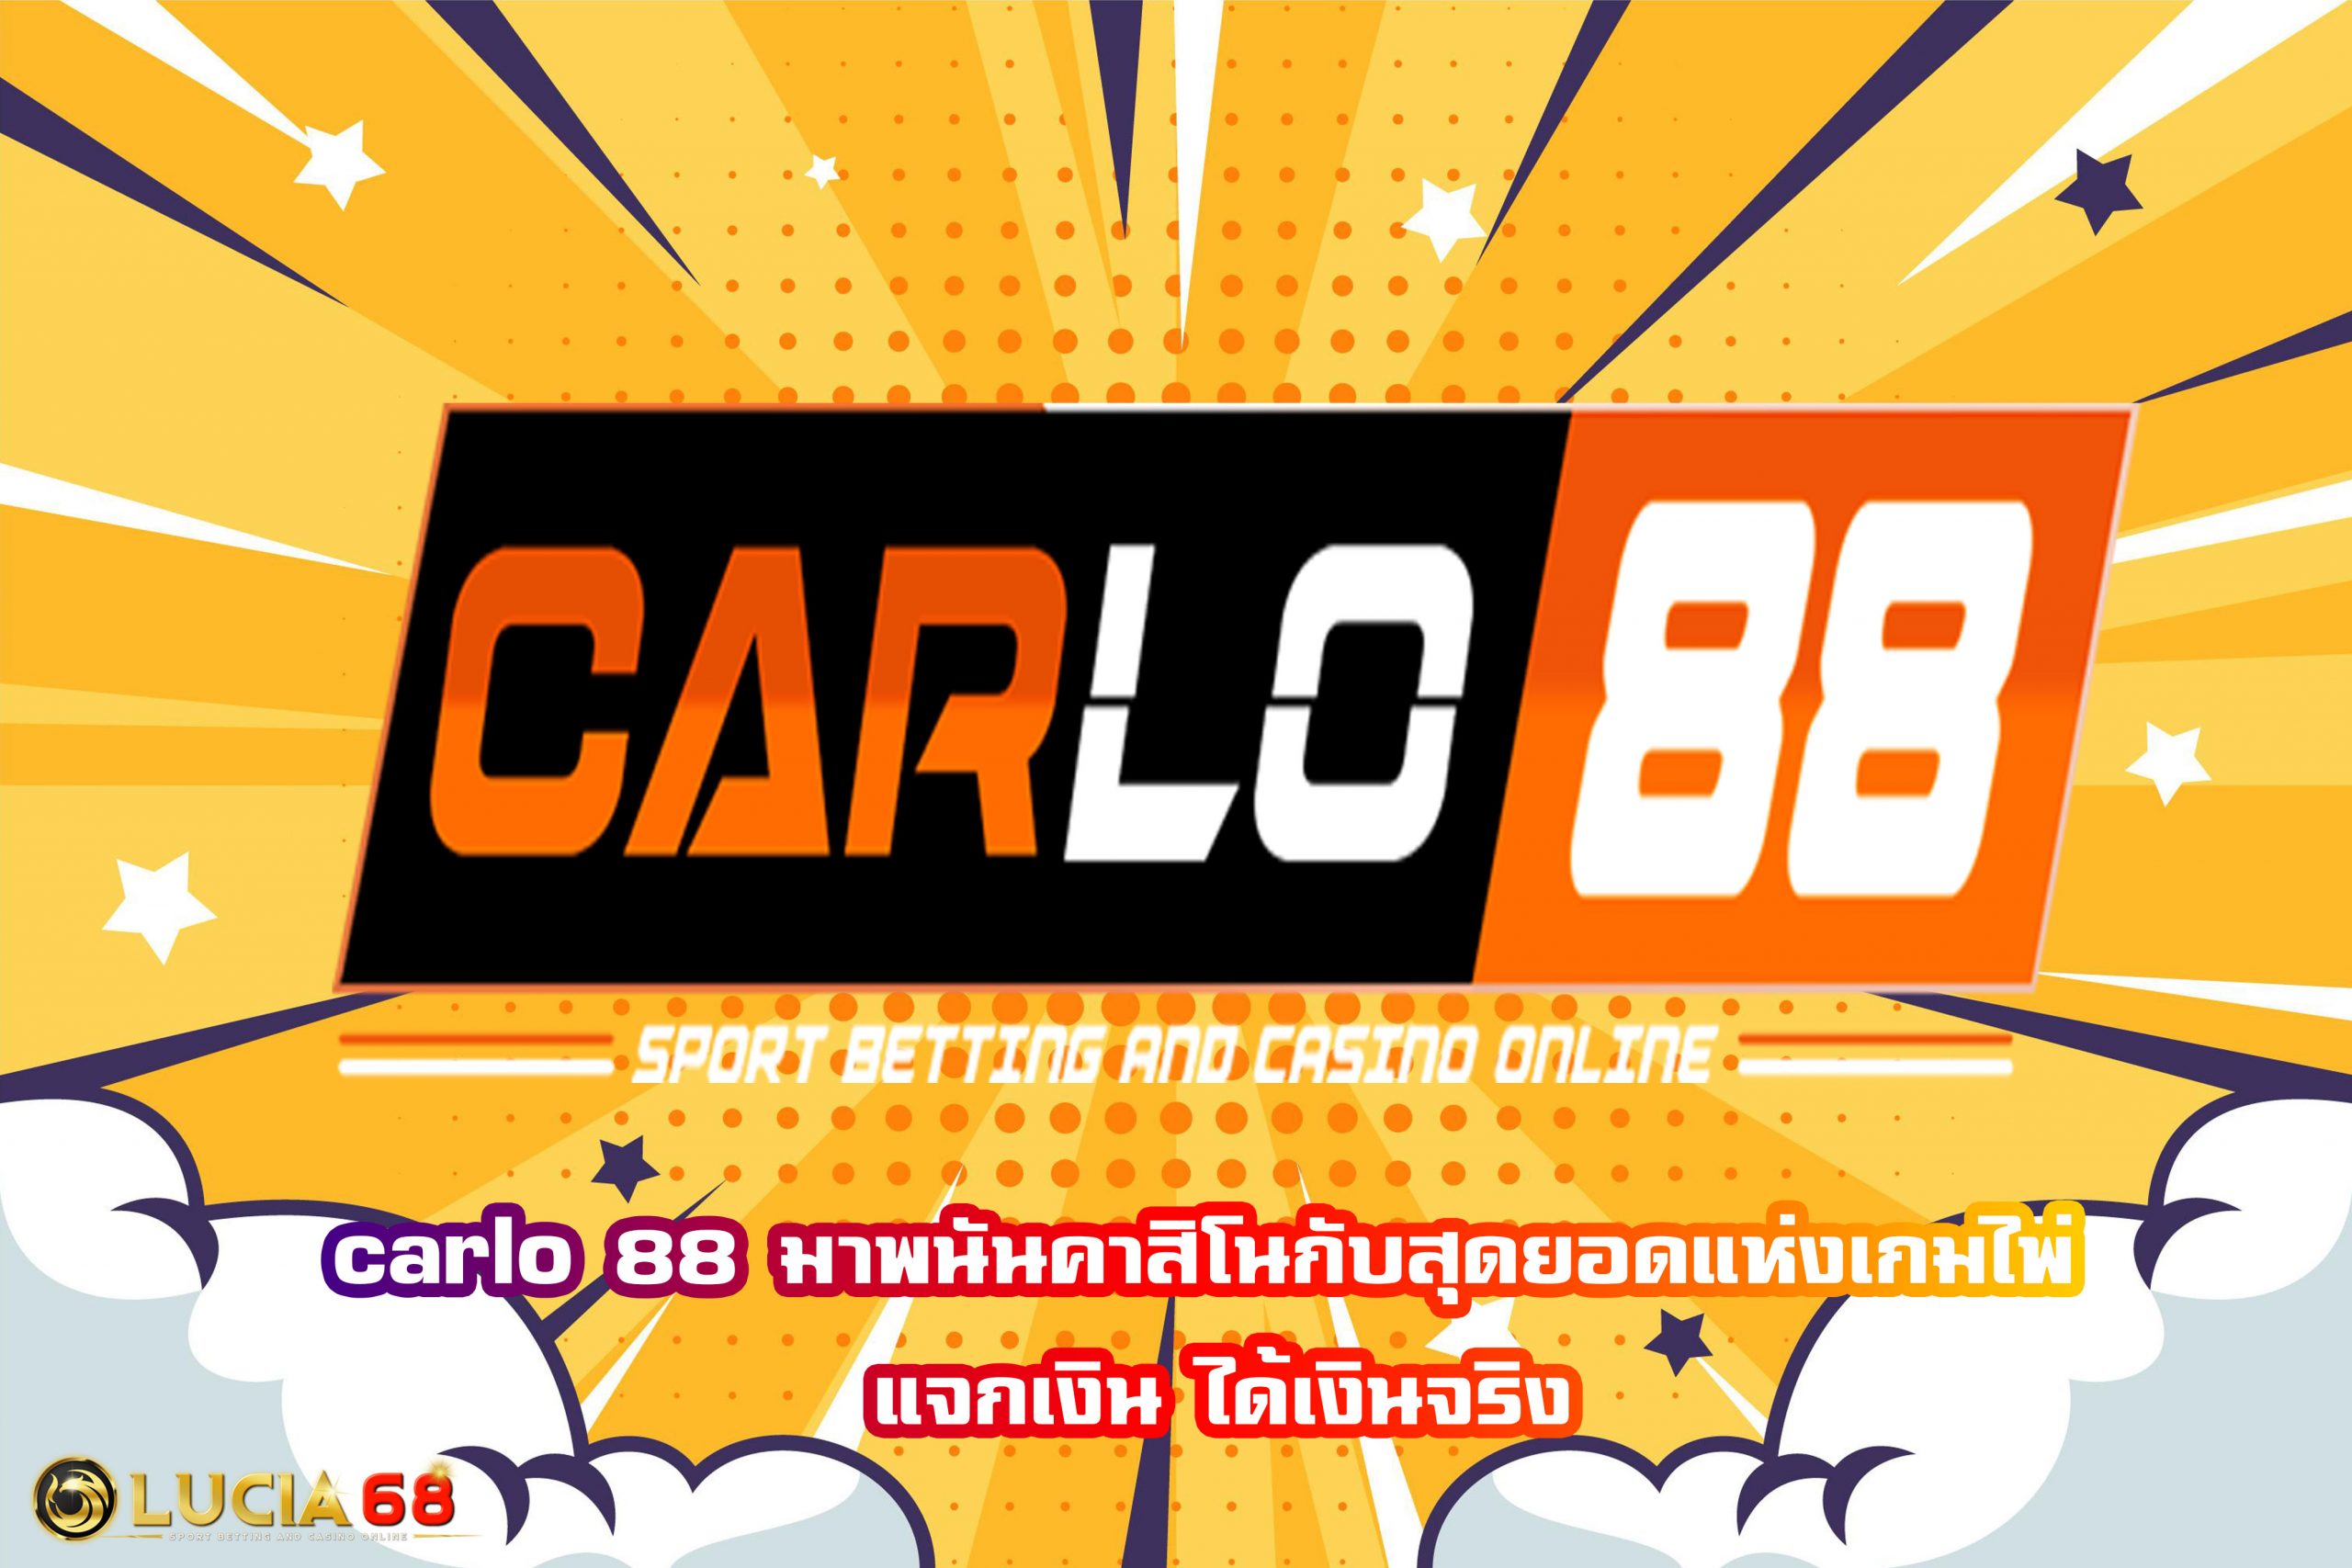 carlo 88 มาพนันคาสิโนกับสุดยอดแห่งเกมไพ่ แจกเงิน ได้เงินจริง